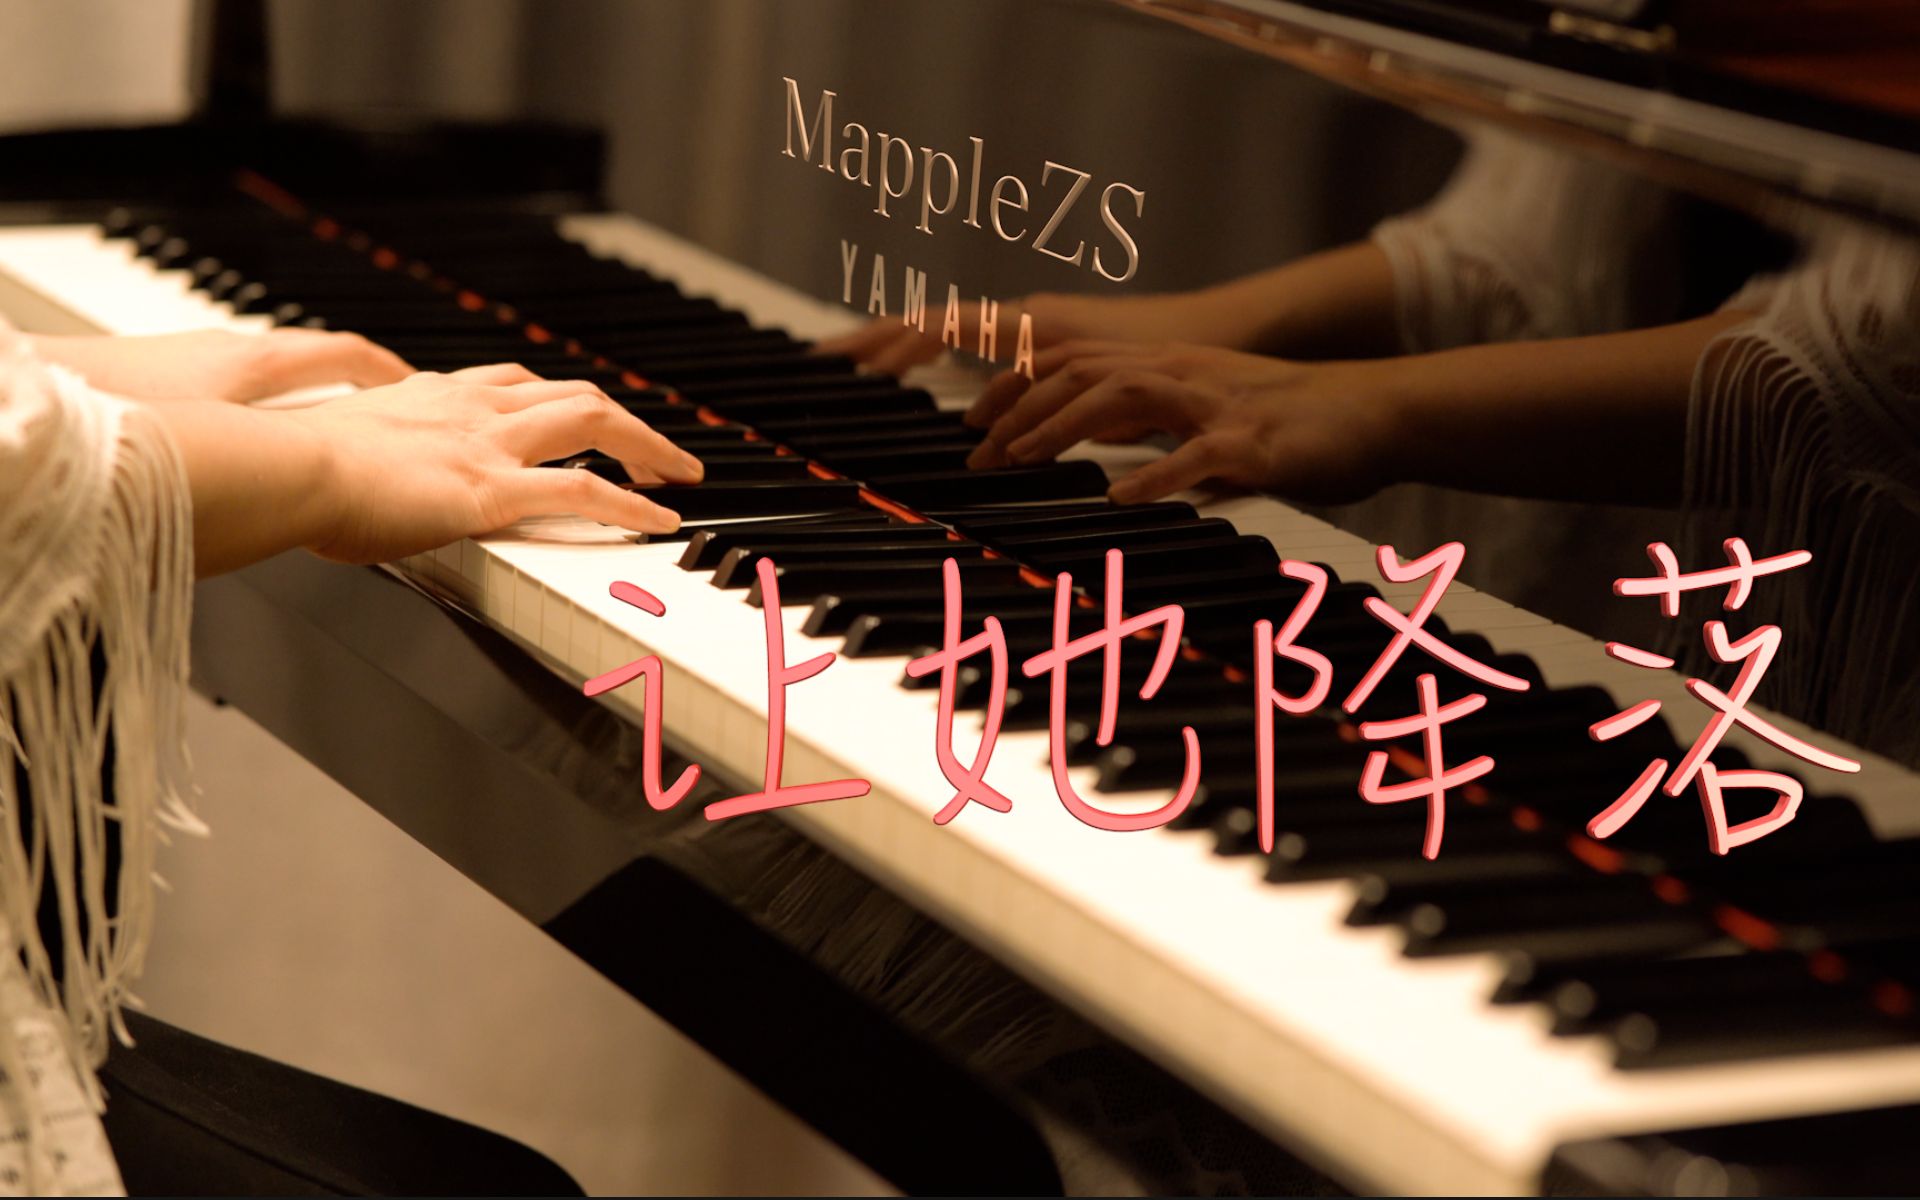 金粉世家片尾曲「让她降落」—MappleZS钢琴演奏